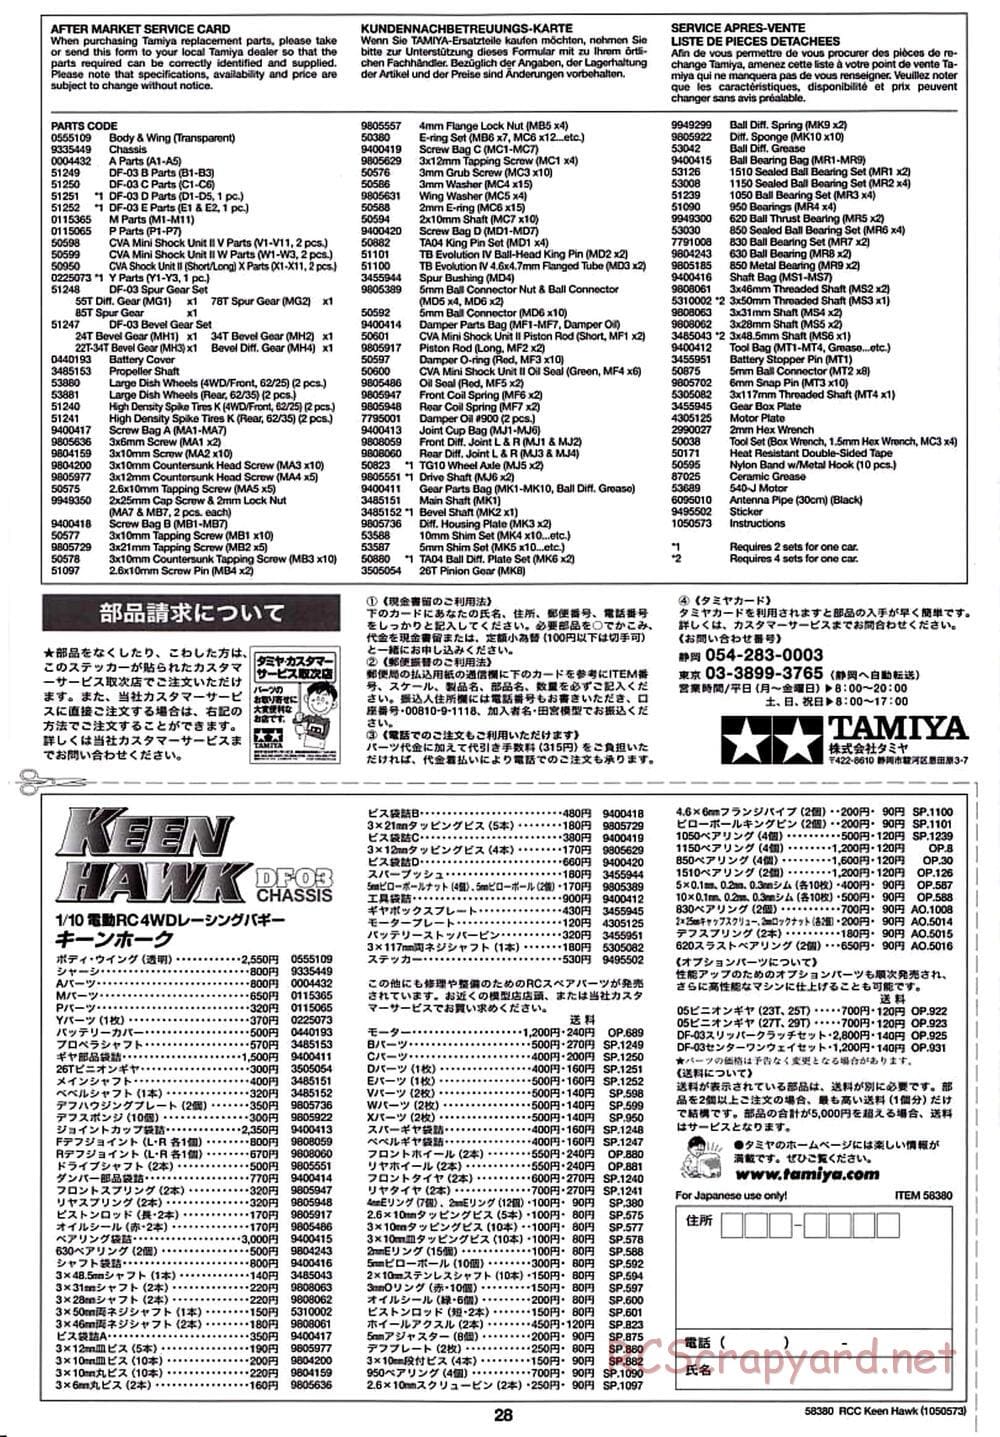 Tamiya - Keen Hawk Chassis - Manual - Page 28